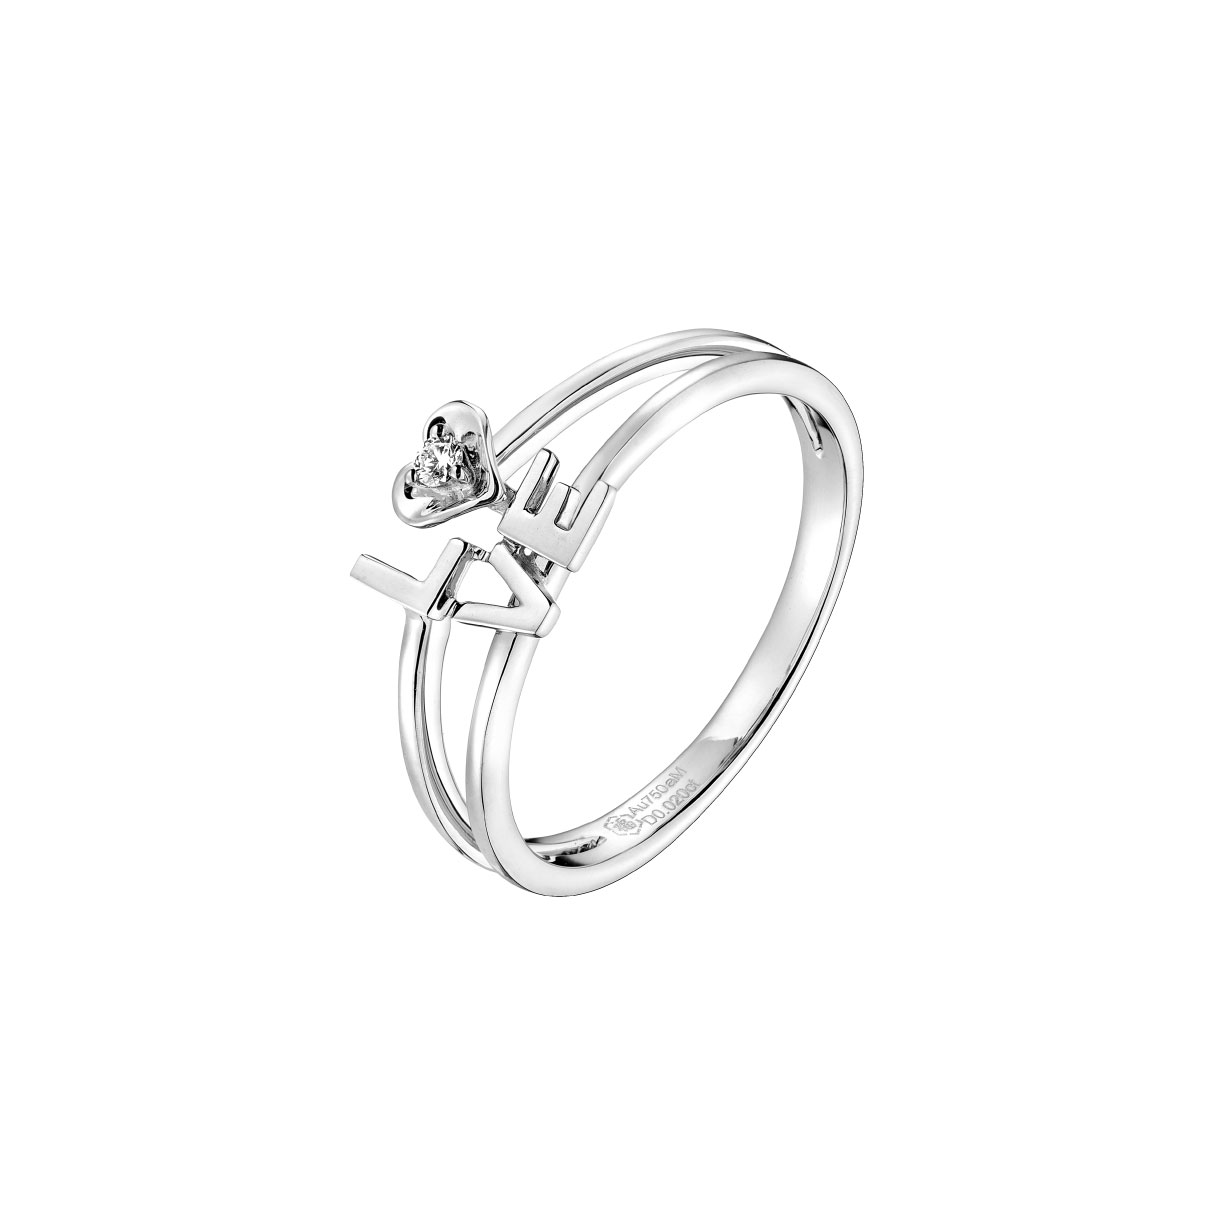 Dear Q "Precious Love" 18K White Gold Diamond Ring with Pearl